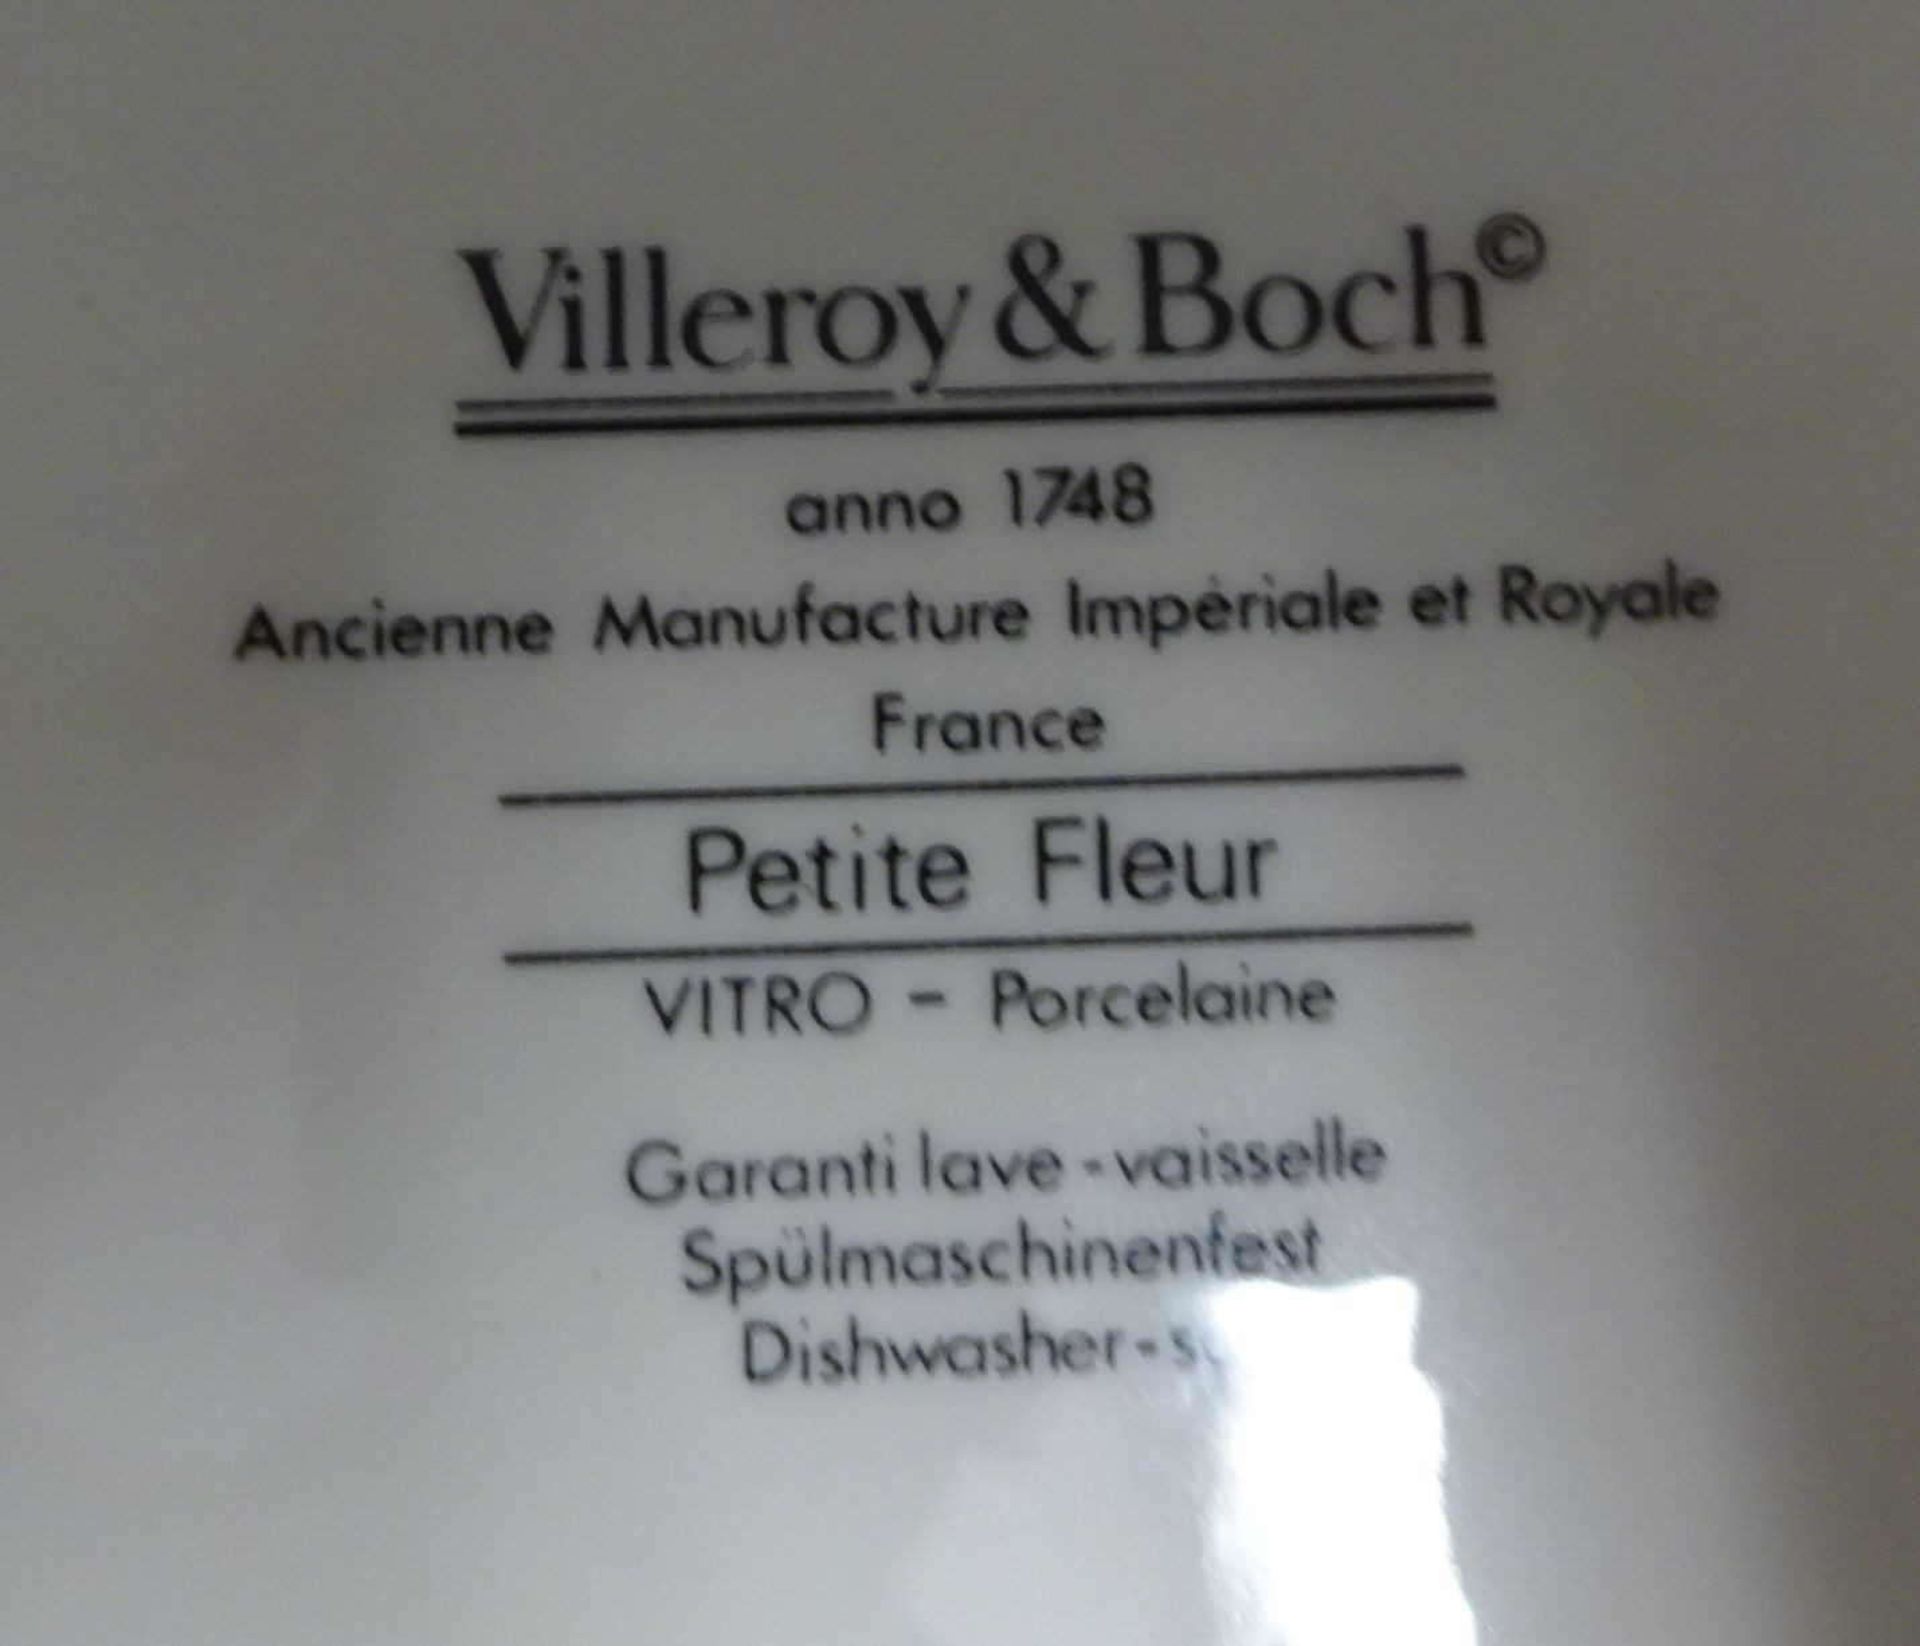 Villeroy & Boch, "Petit Fleur", Serviceteile, bestehend aus 6 Kuchenteller, 6 Unterteller, 1 - Bild 3 aus 3